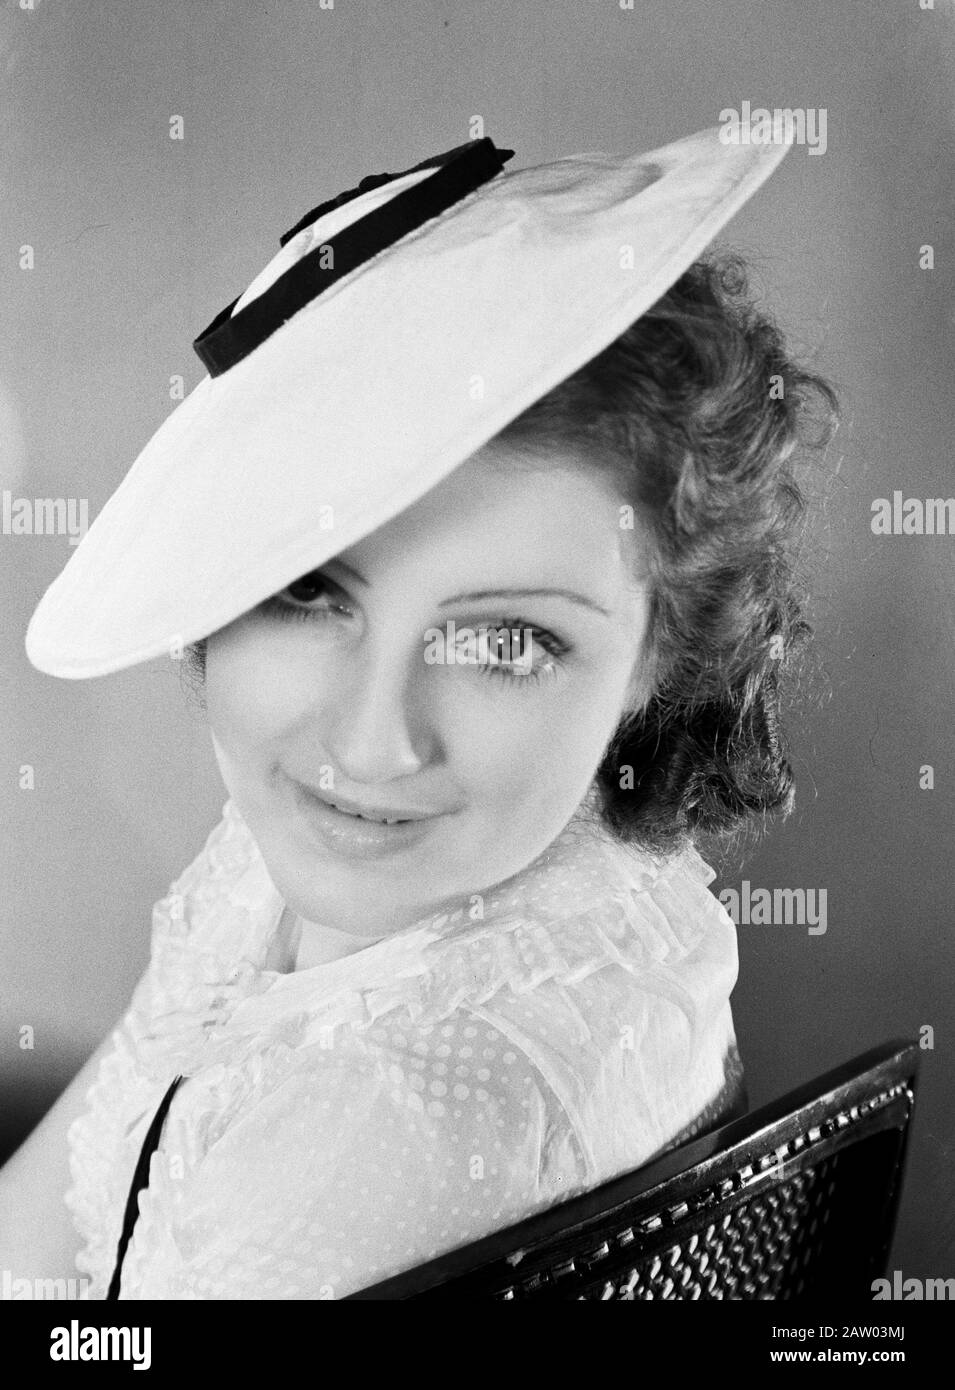 Photo de mode Miss France avec chapeaux d'hiver Hélène Sorbier, en juillet  1936 - avec chapeau blanc Annotation: Terme de carte pas clair Date: 1  juillet 1936 lieu: France, Paris mots clés: